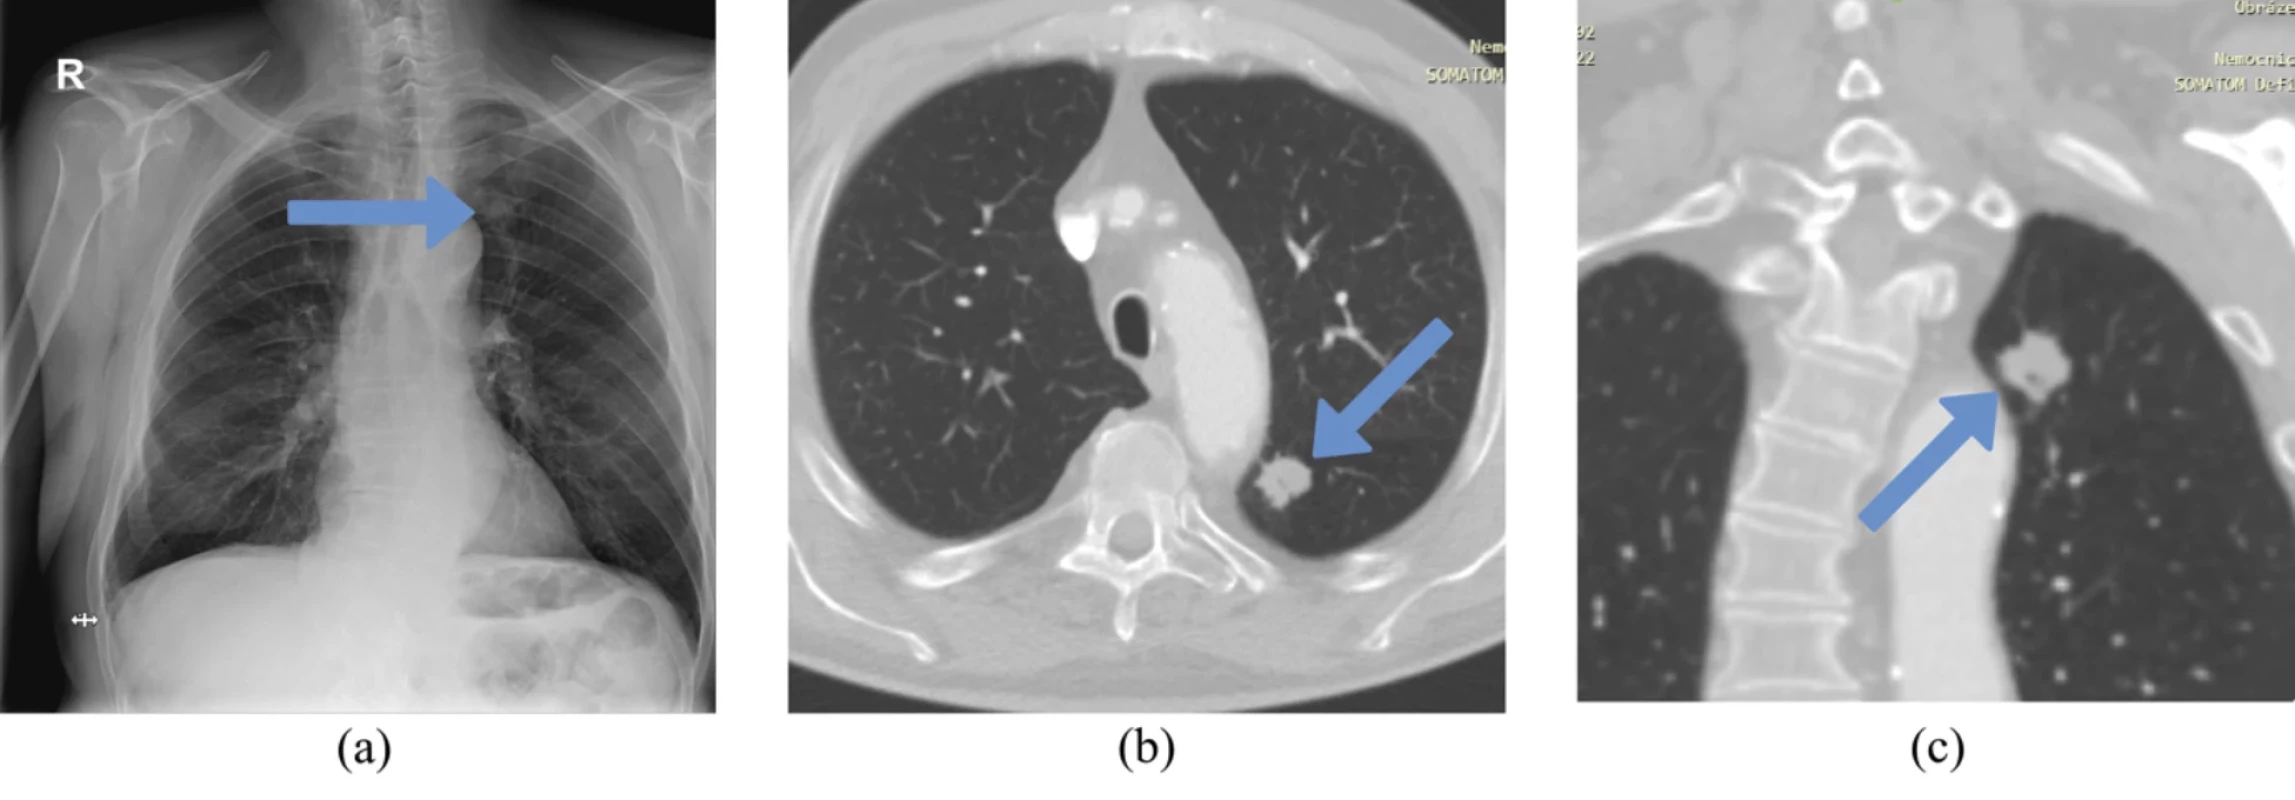 Vstupní rentgenový snímek hrudníku a kontrolní CT snímek s plicní lézí. 